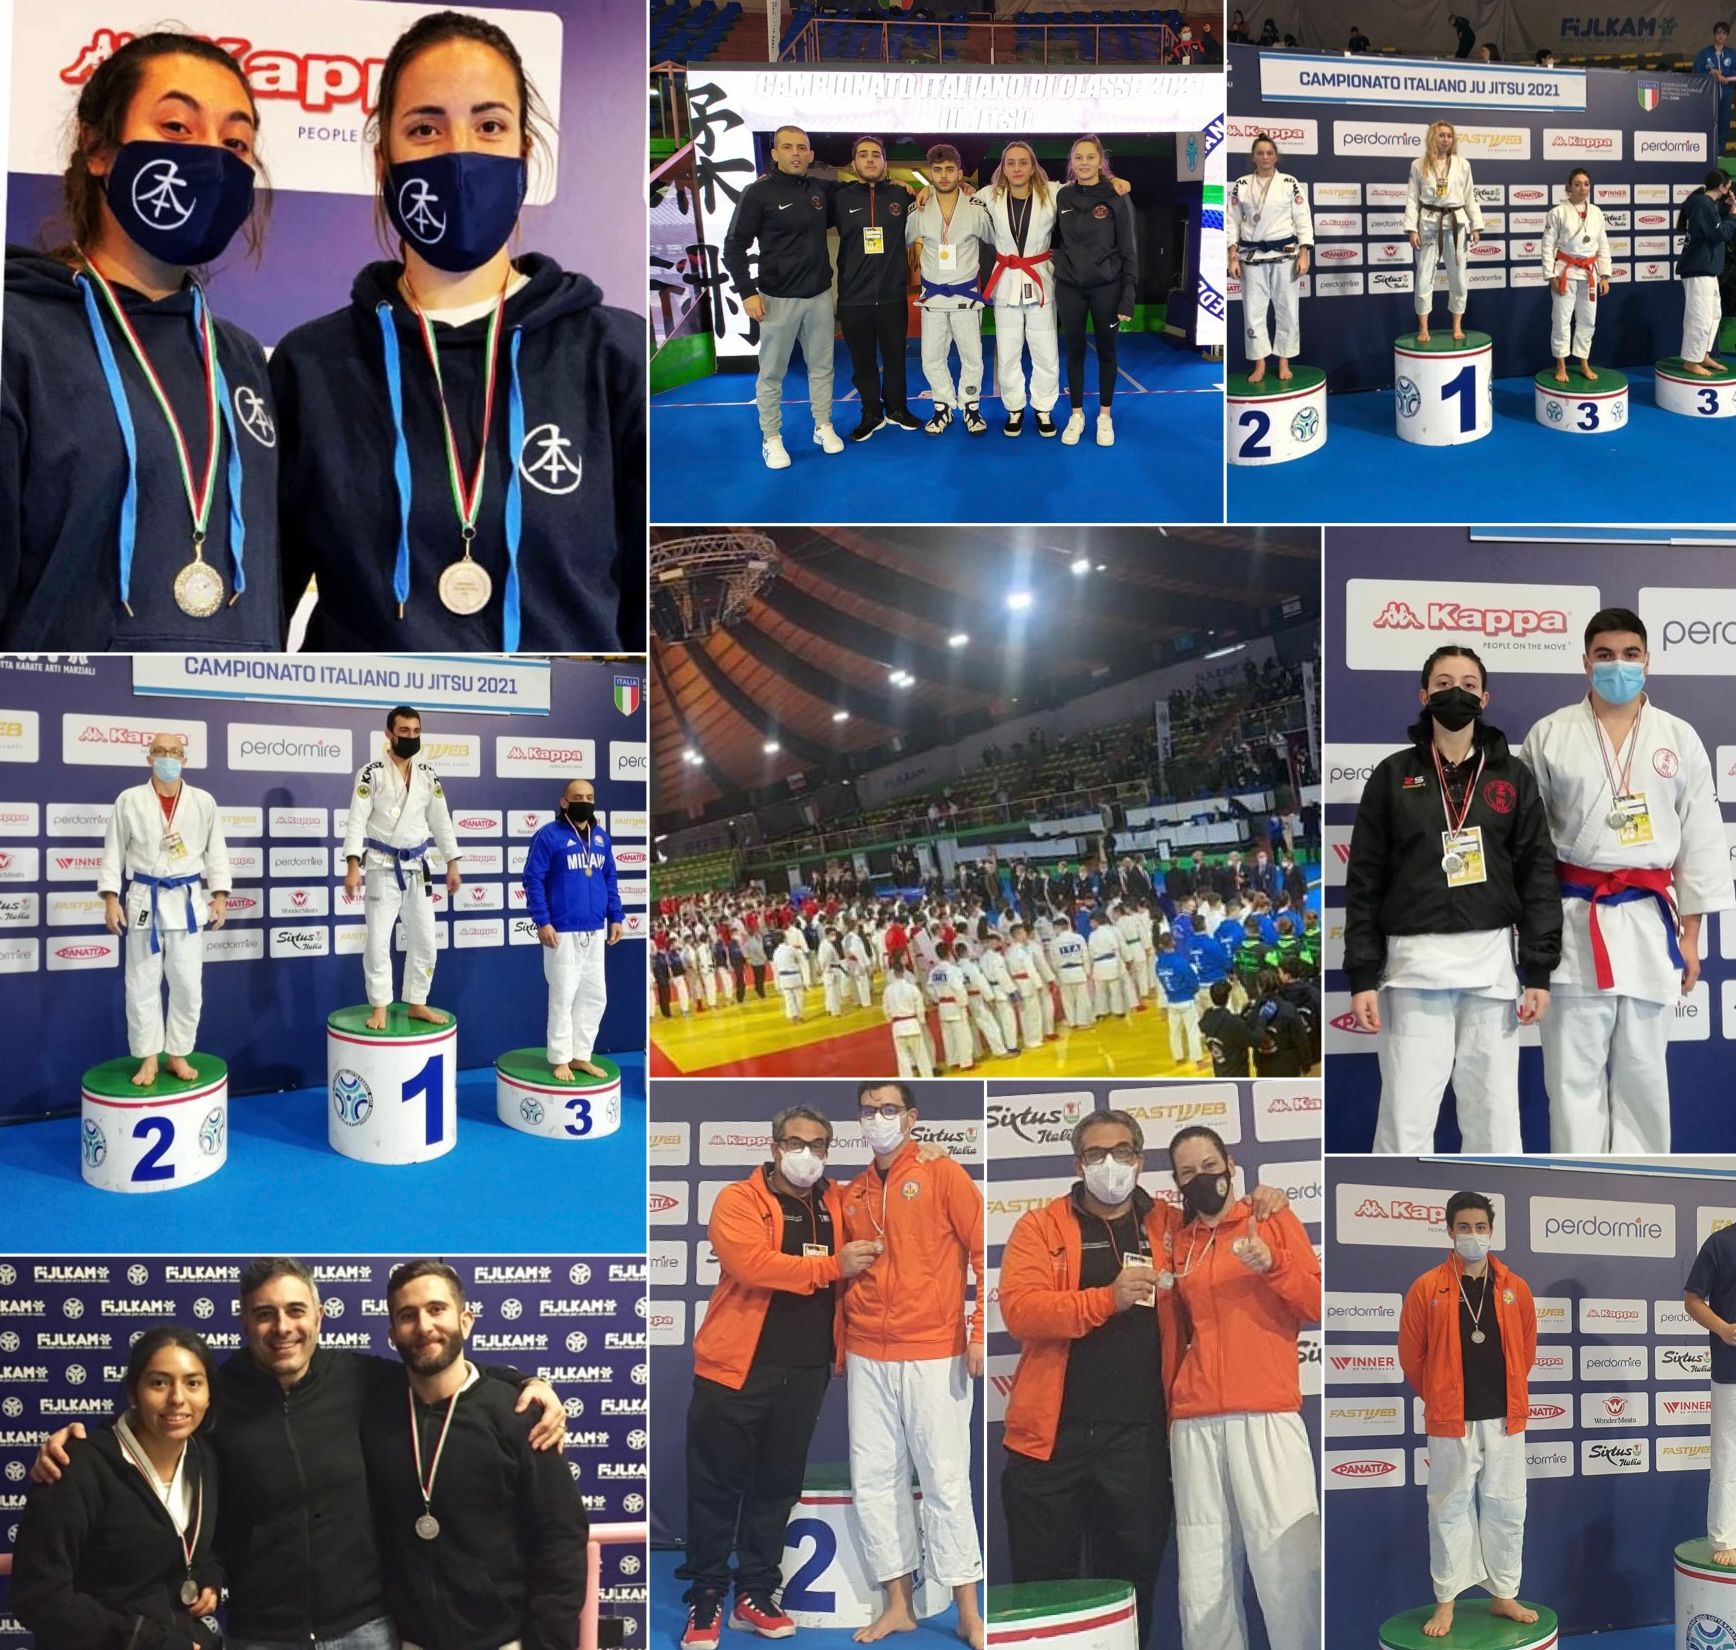 Campionati Italiani di Categoria di Ju Jitsu 2021: 3 Ori, 8 Argenti e 1 Bronzo!